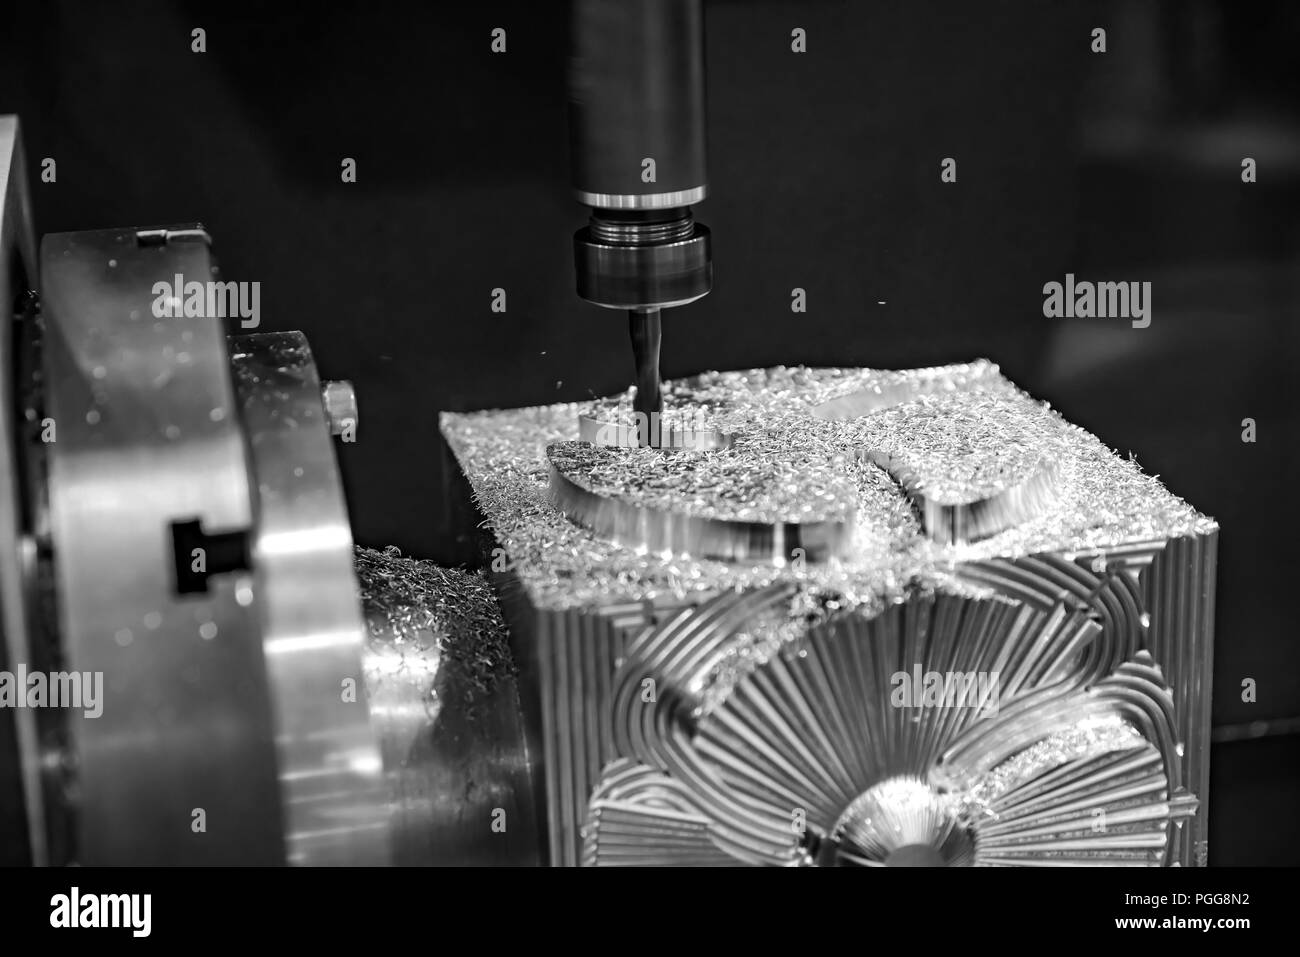 Metallbearbeitung CNC-Fräsmaschine. Modernen Metallverarbeitung schneiden Technologie. Kleine Schärfentiefe. Warnung - authentische Aufnahmen in schwierigen condit Stockfoto